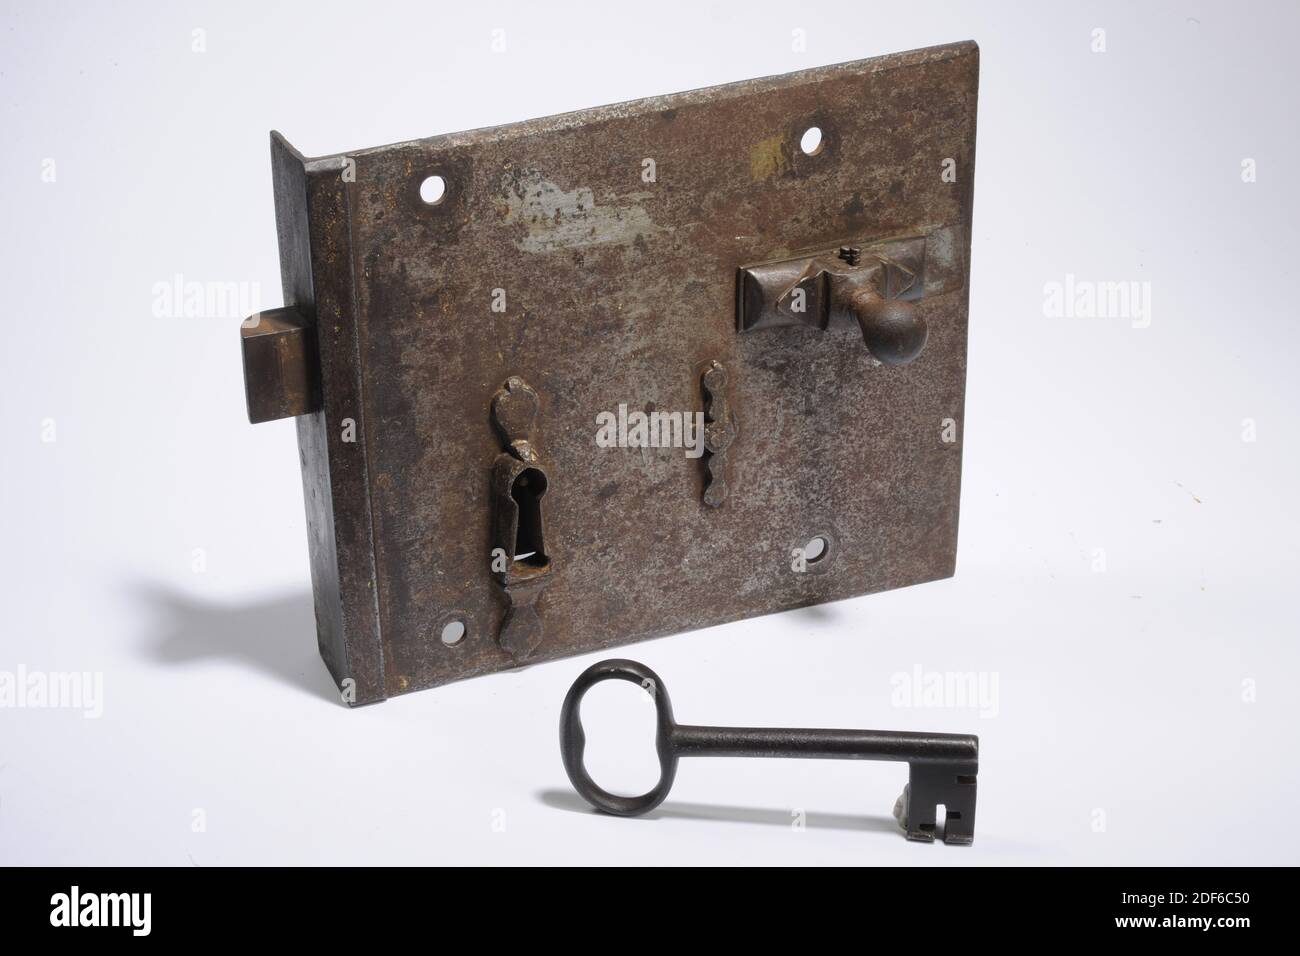 Anonyme, 16ème siècle, serrure: 22.7 x 29.7 x 5,4cm (227 x 297 x 54mm),  clé: 7 x 15.2 x 1.2cm (70 x 152 x 12mm), serrure en fer avec clé attribuée à